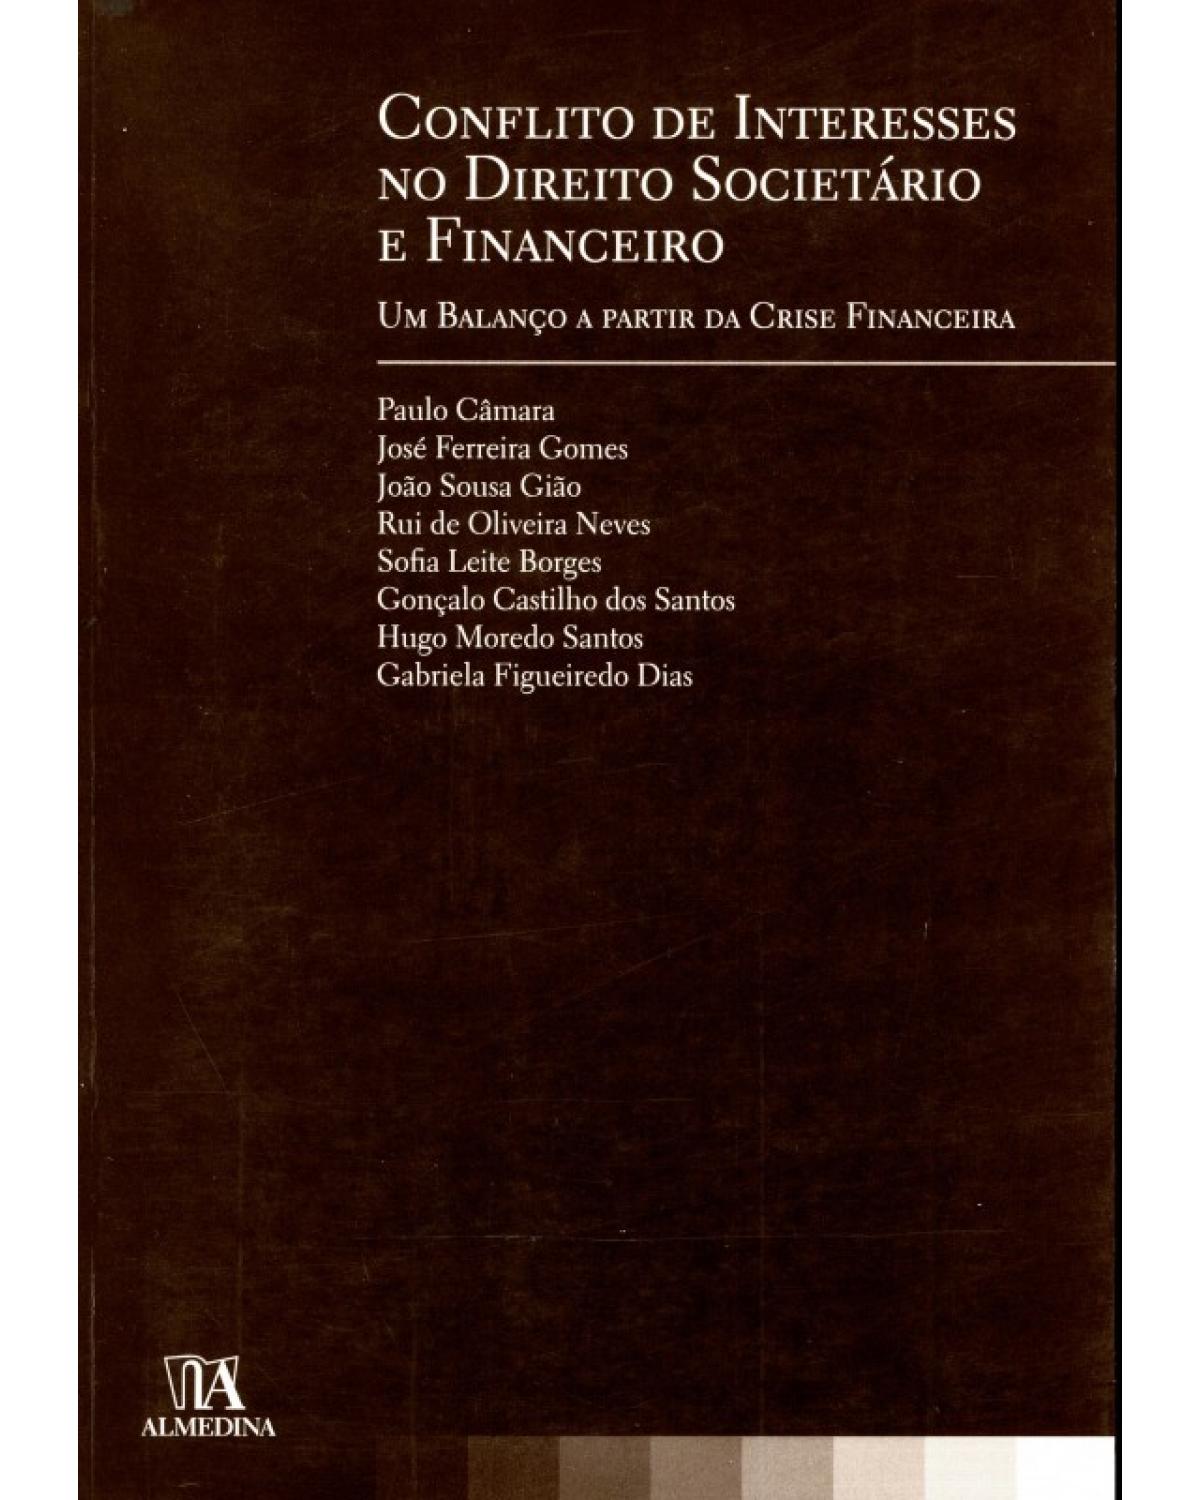 Conflito de interesses no direito societário e financeiro: Um balanço a partir da crise financeira - 1ª Edição | 2010